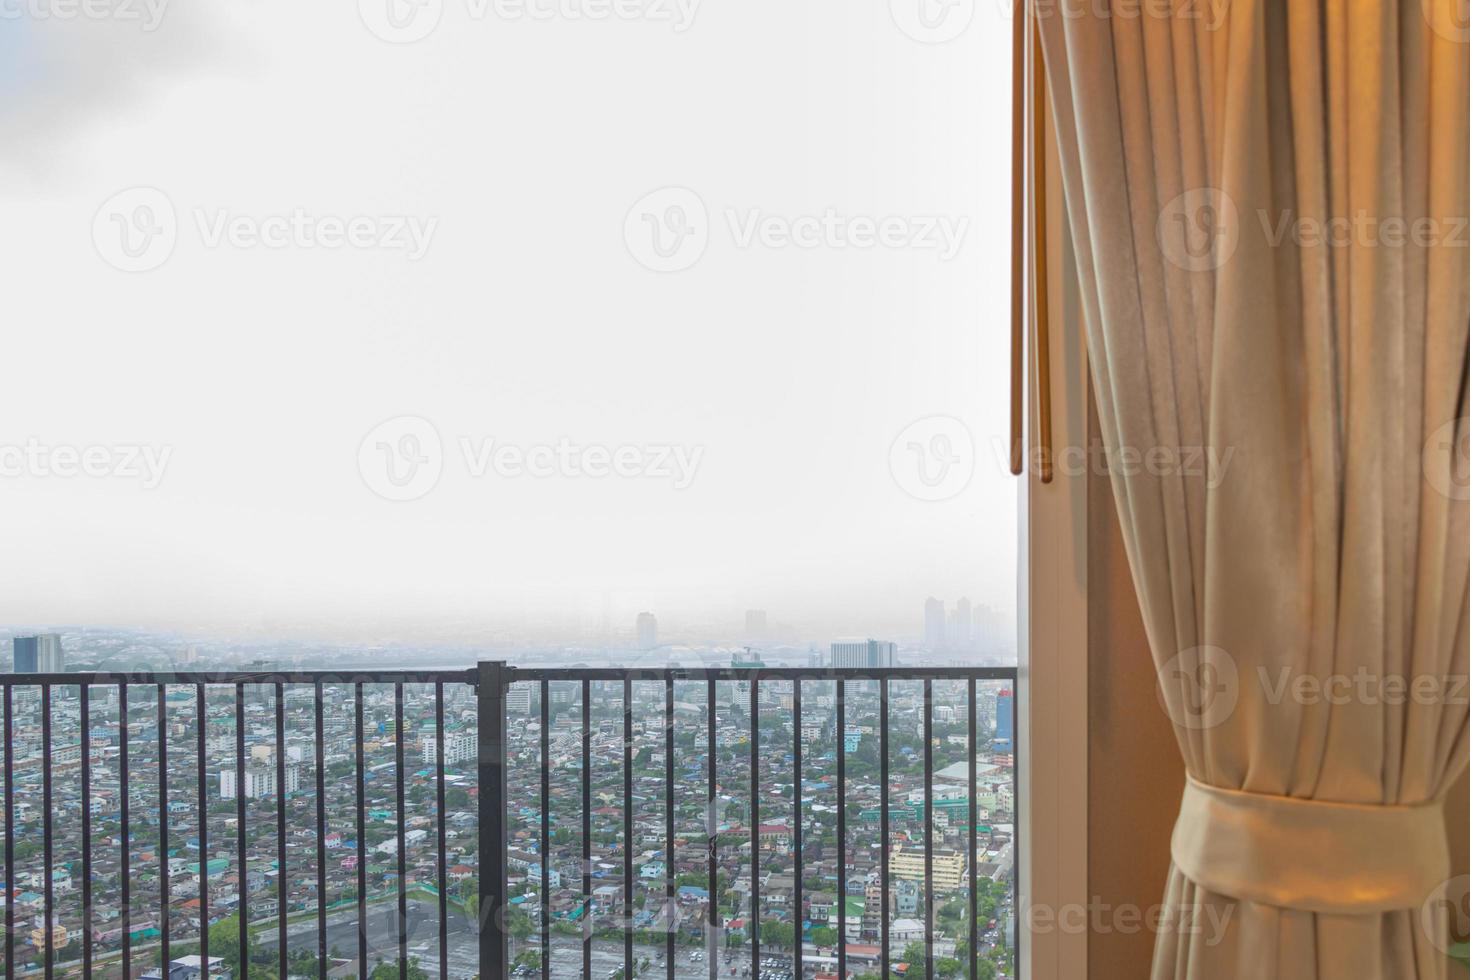 stadens atmosfär, tittar från fönstret med gardiner foto